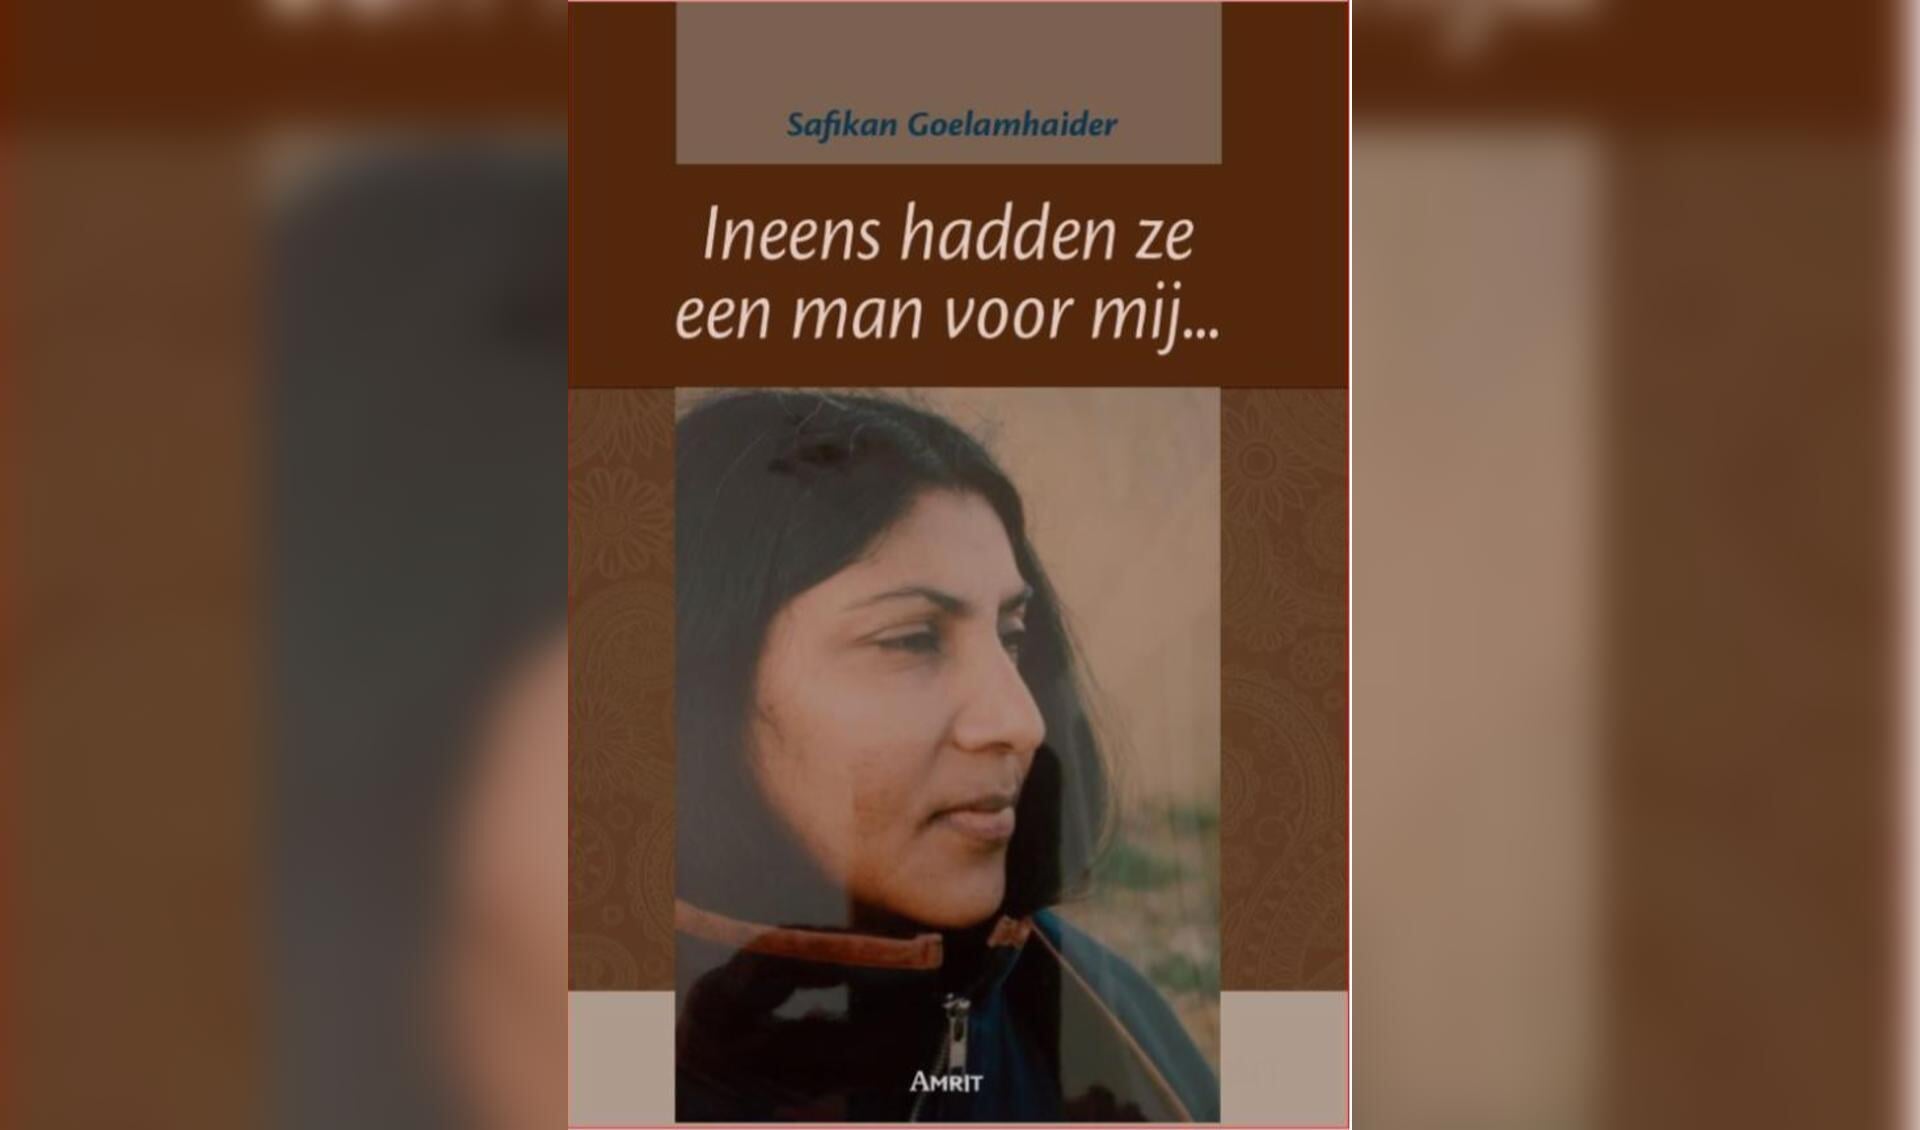 Het boek van Goelamhaider dat over haar komst naar Nederland gaat en hoe zij zich hier staande wist te houden.